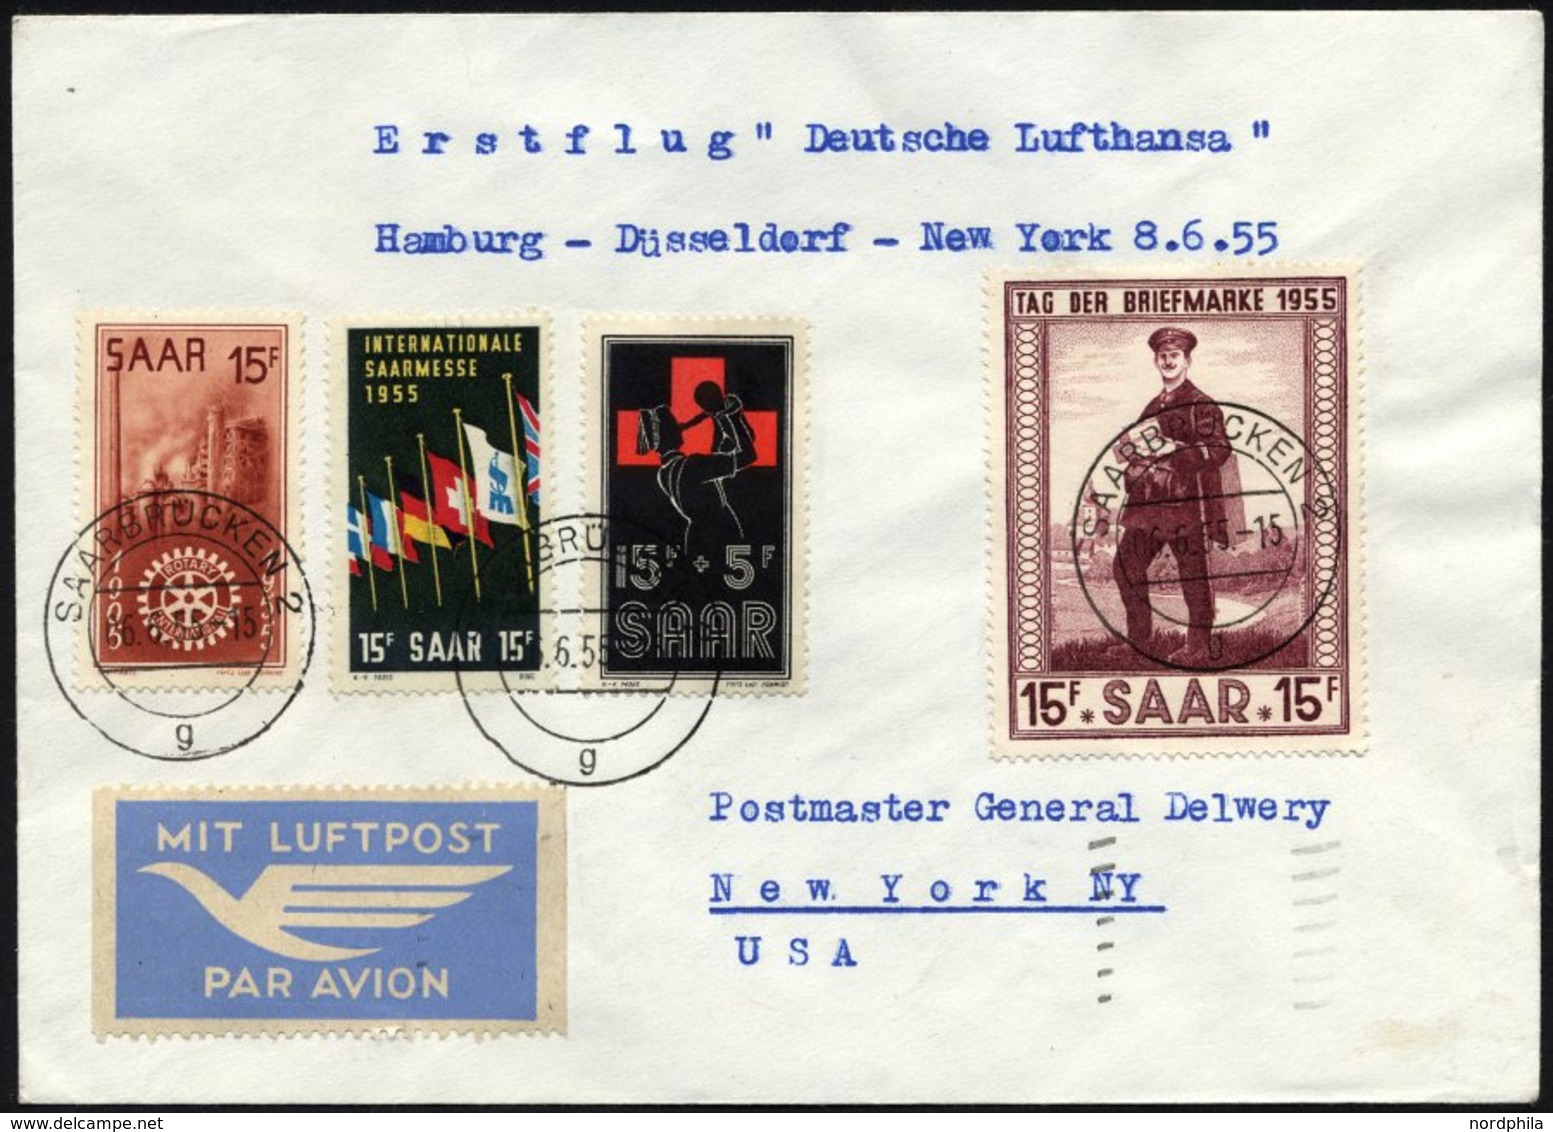 DEUTSCHE LUFTHANSA 34 BRIEF, 8.6.1955, Hamburg-New York, Prachtbrief - Used Stamps